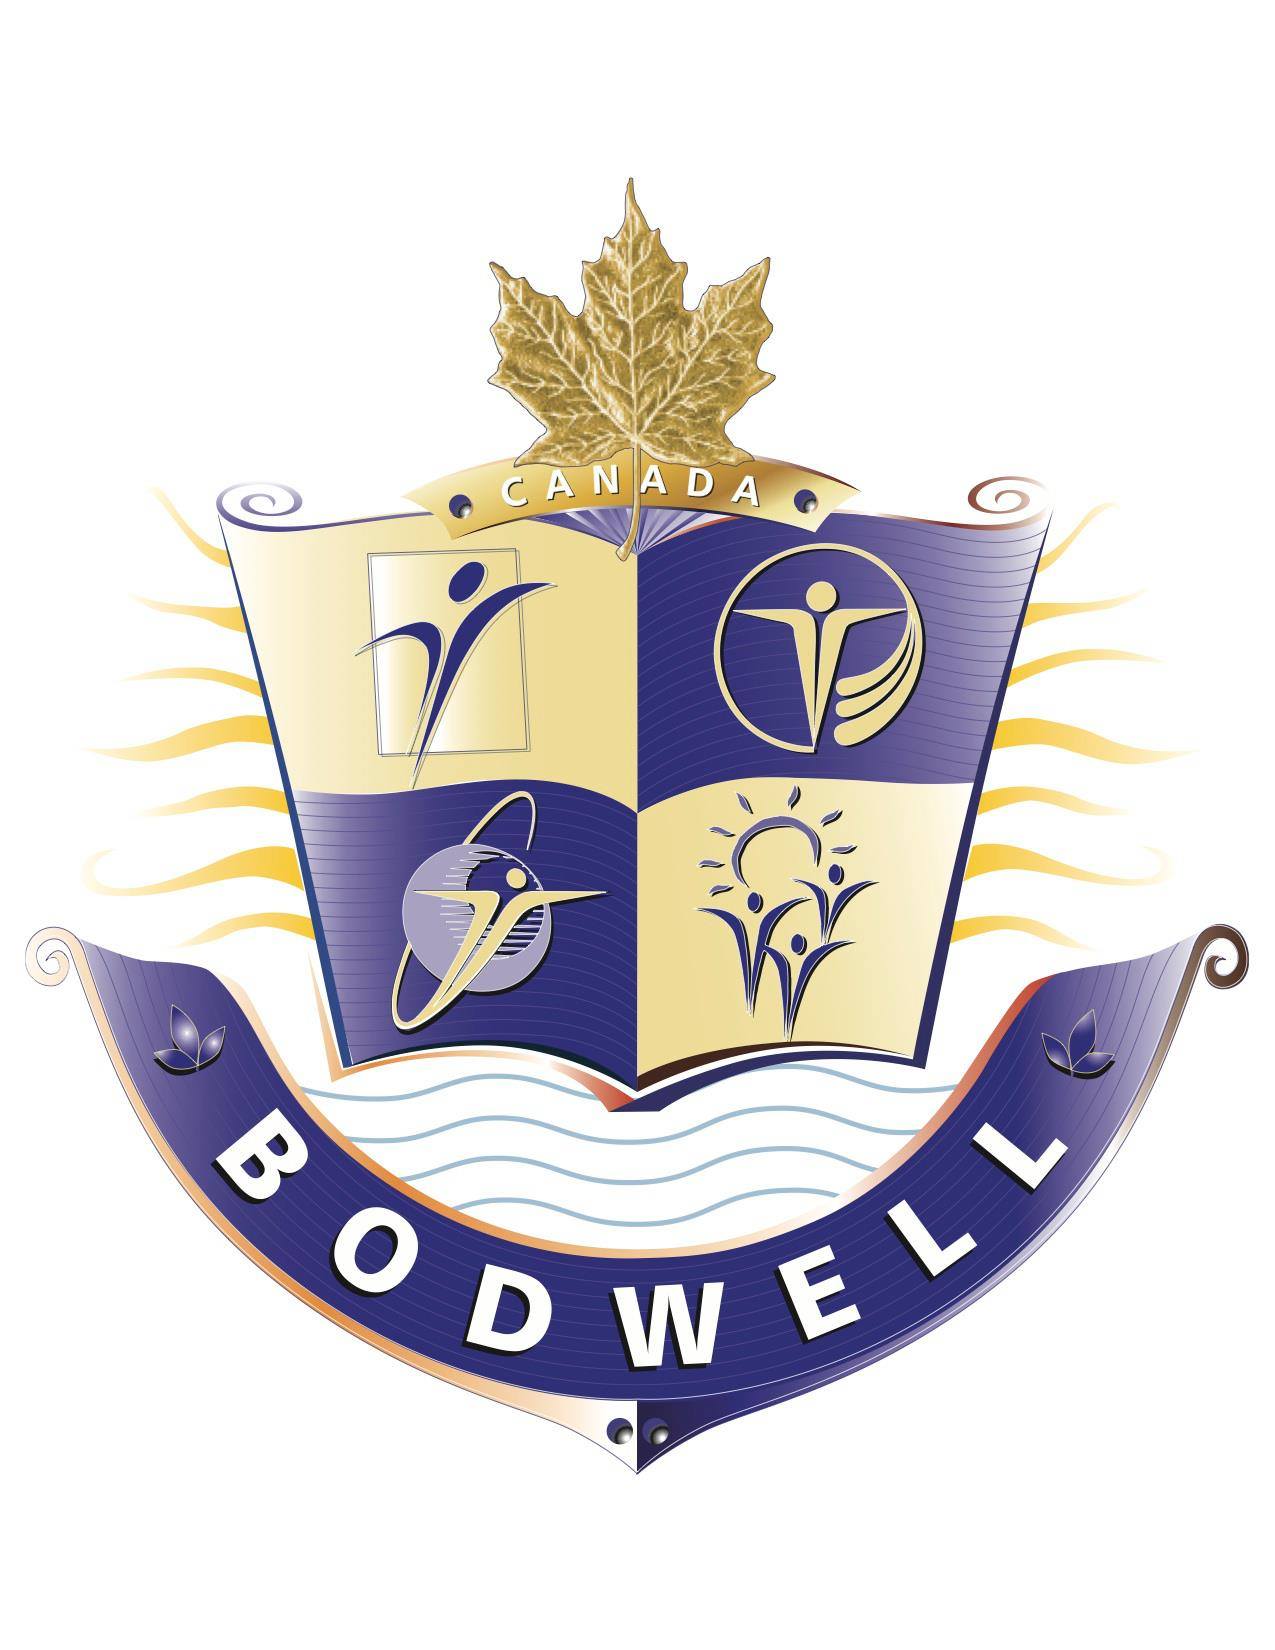 Trường Tư Thục Nội Trú Bodwell High School, North Vancouver, British Columbia, Canada